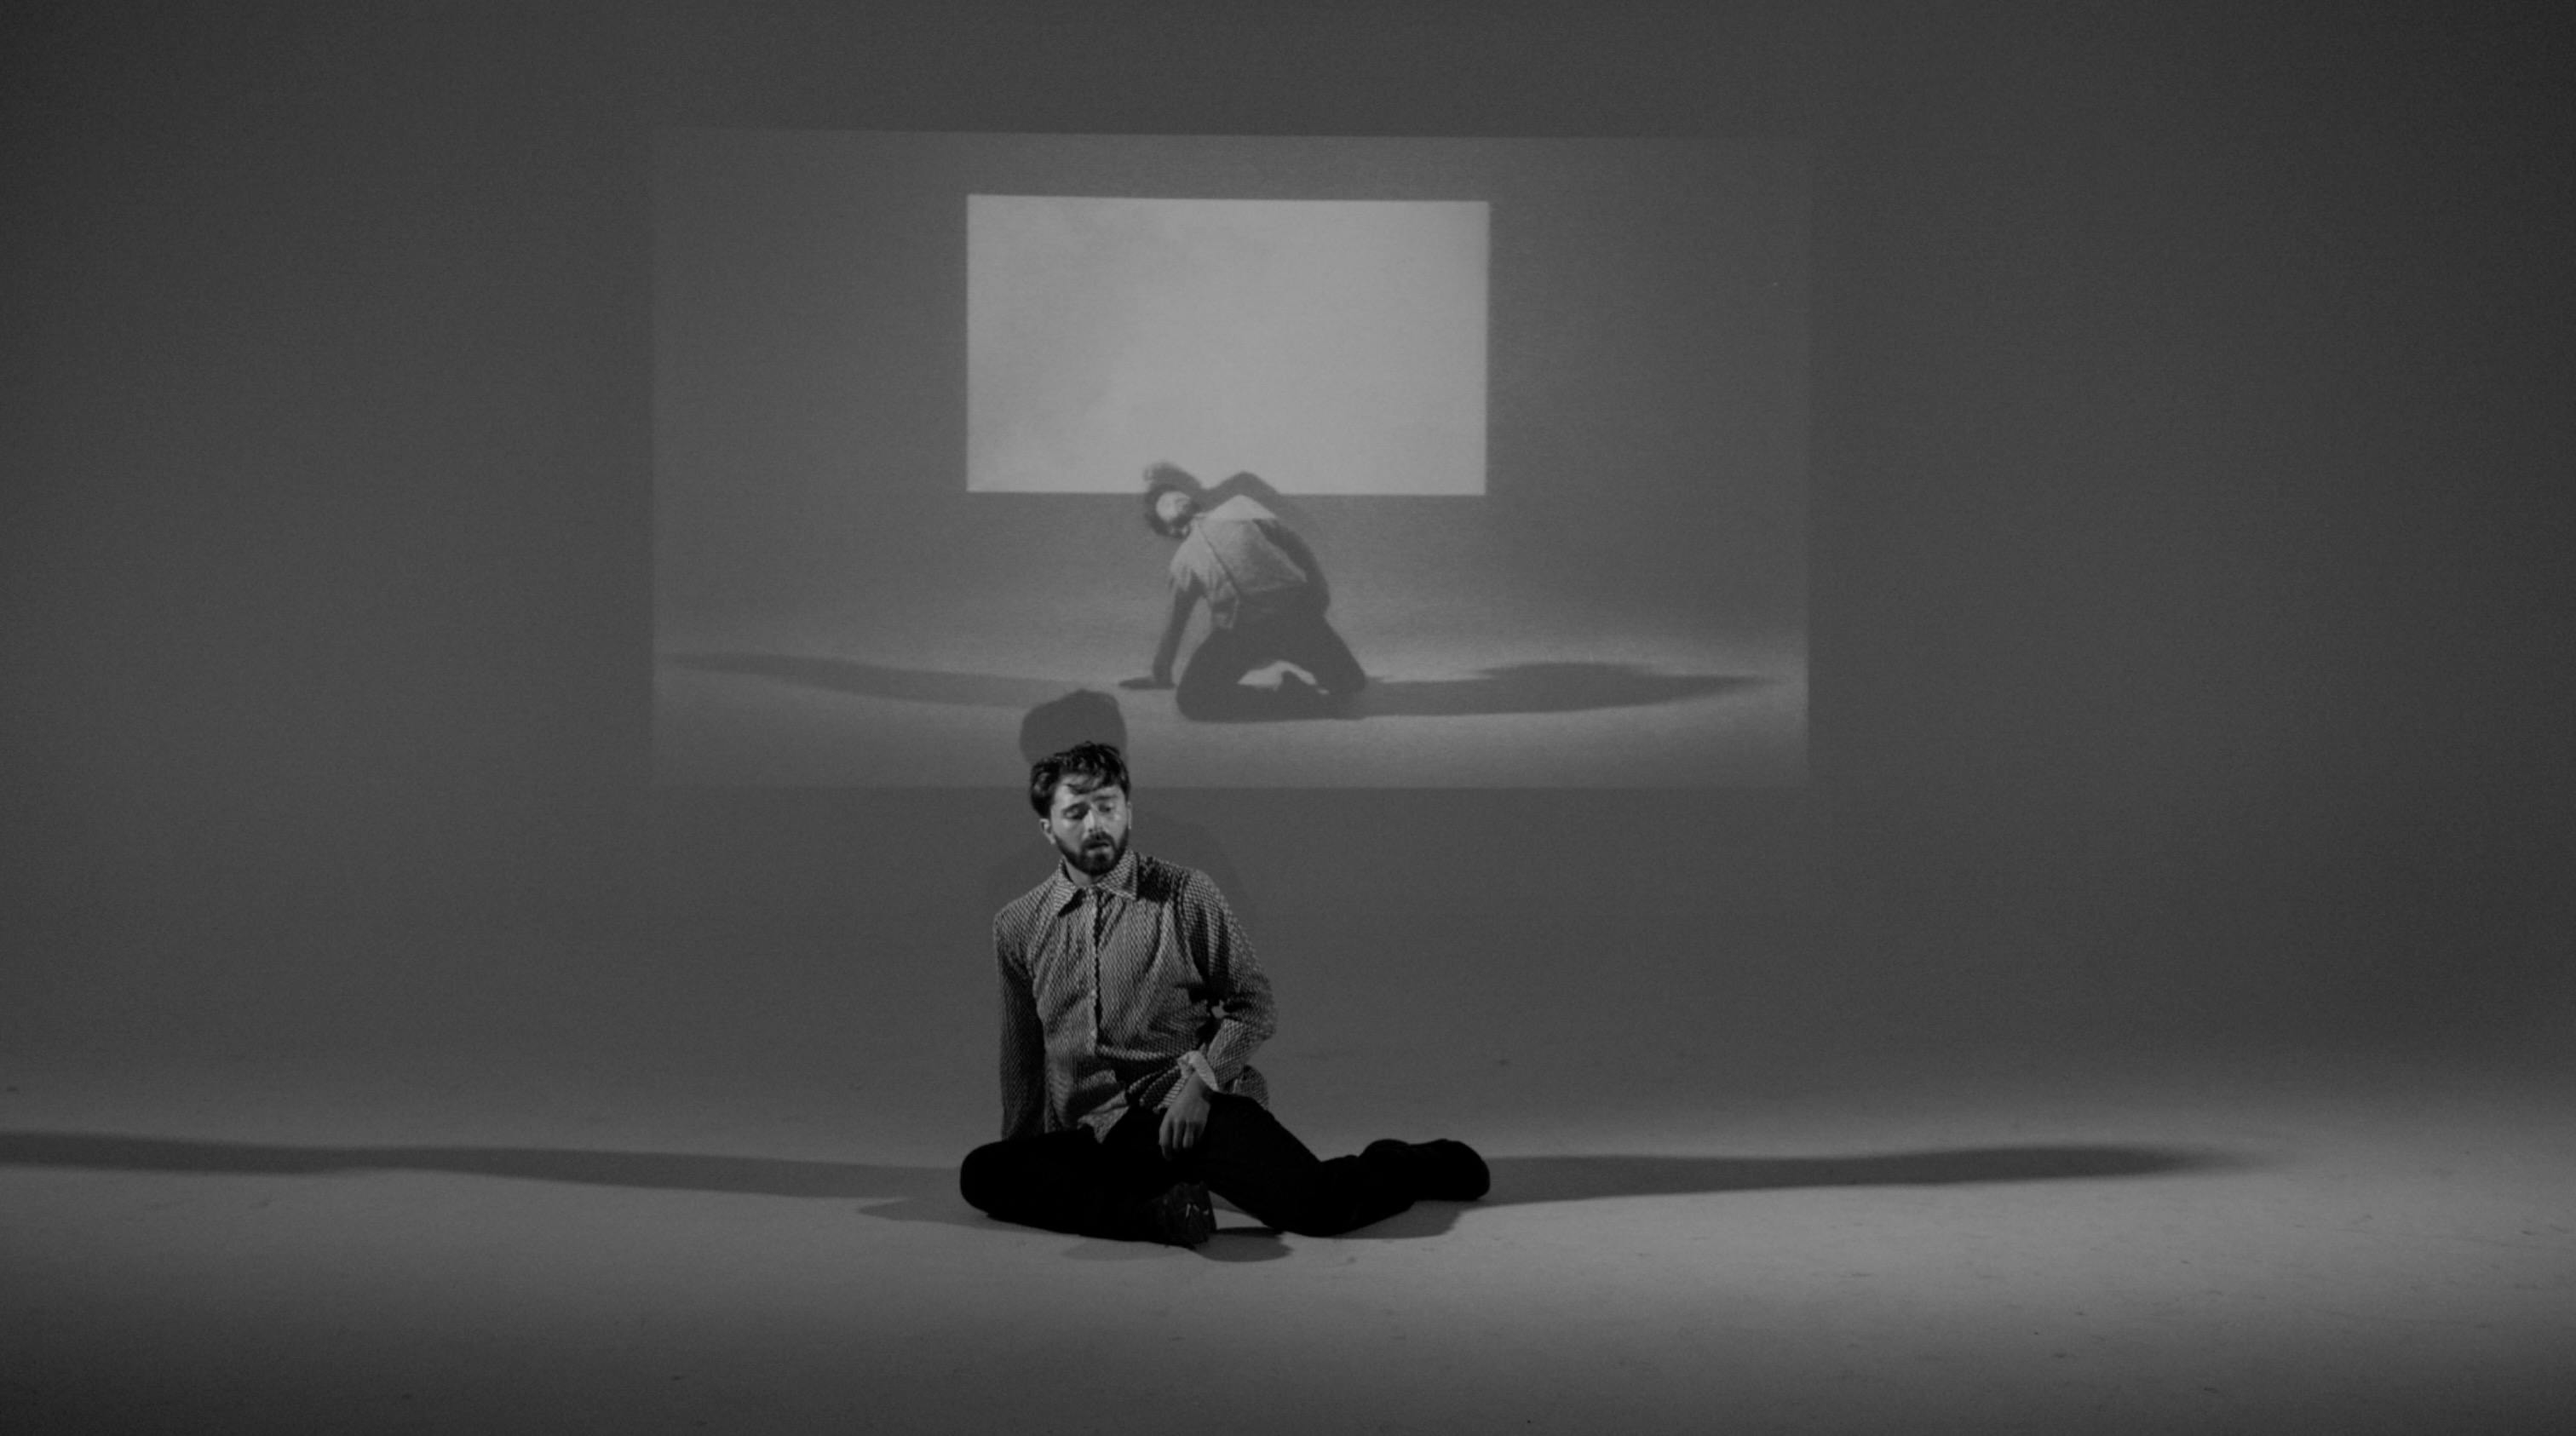 Simone Donati in una fotografia in bianco e nero indossa una camicia ed è seduto per terra, un proiettore mostra la stessa scena alle sue spalle